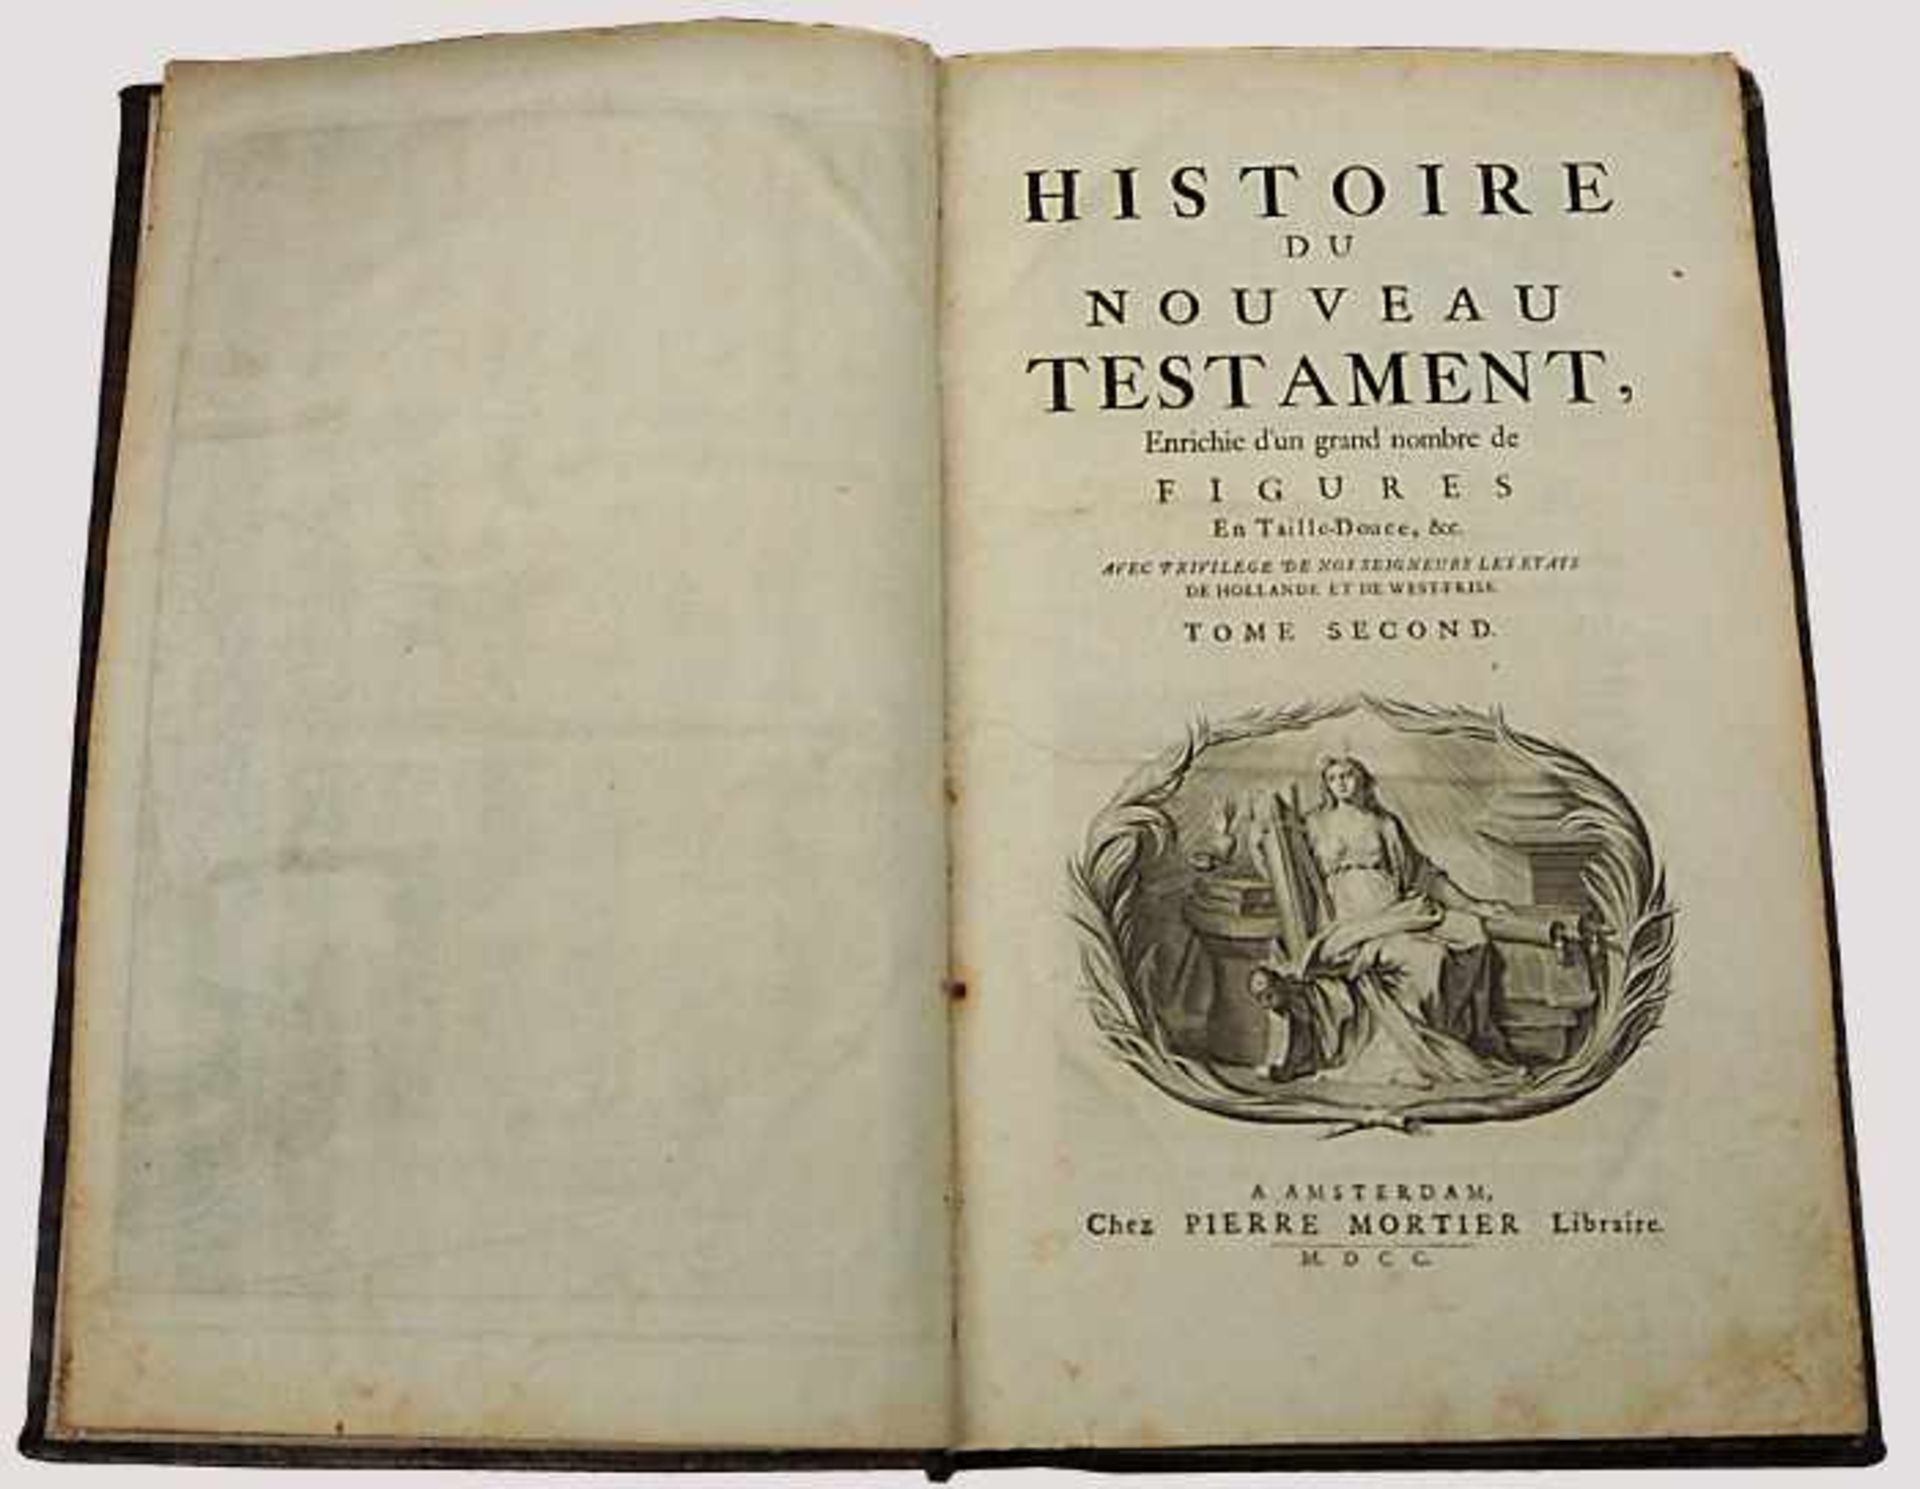 Buch "L'Histoire du Nouveau Testament", Herausgeber Pierre MORTIER, Amsterdam 1700,Titelkupfer,